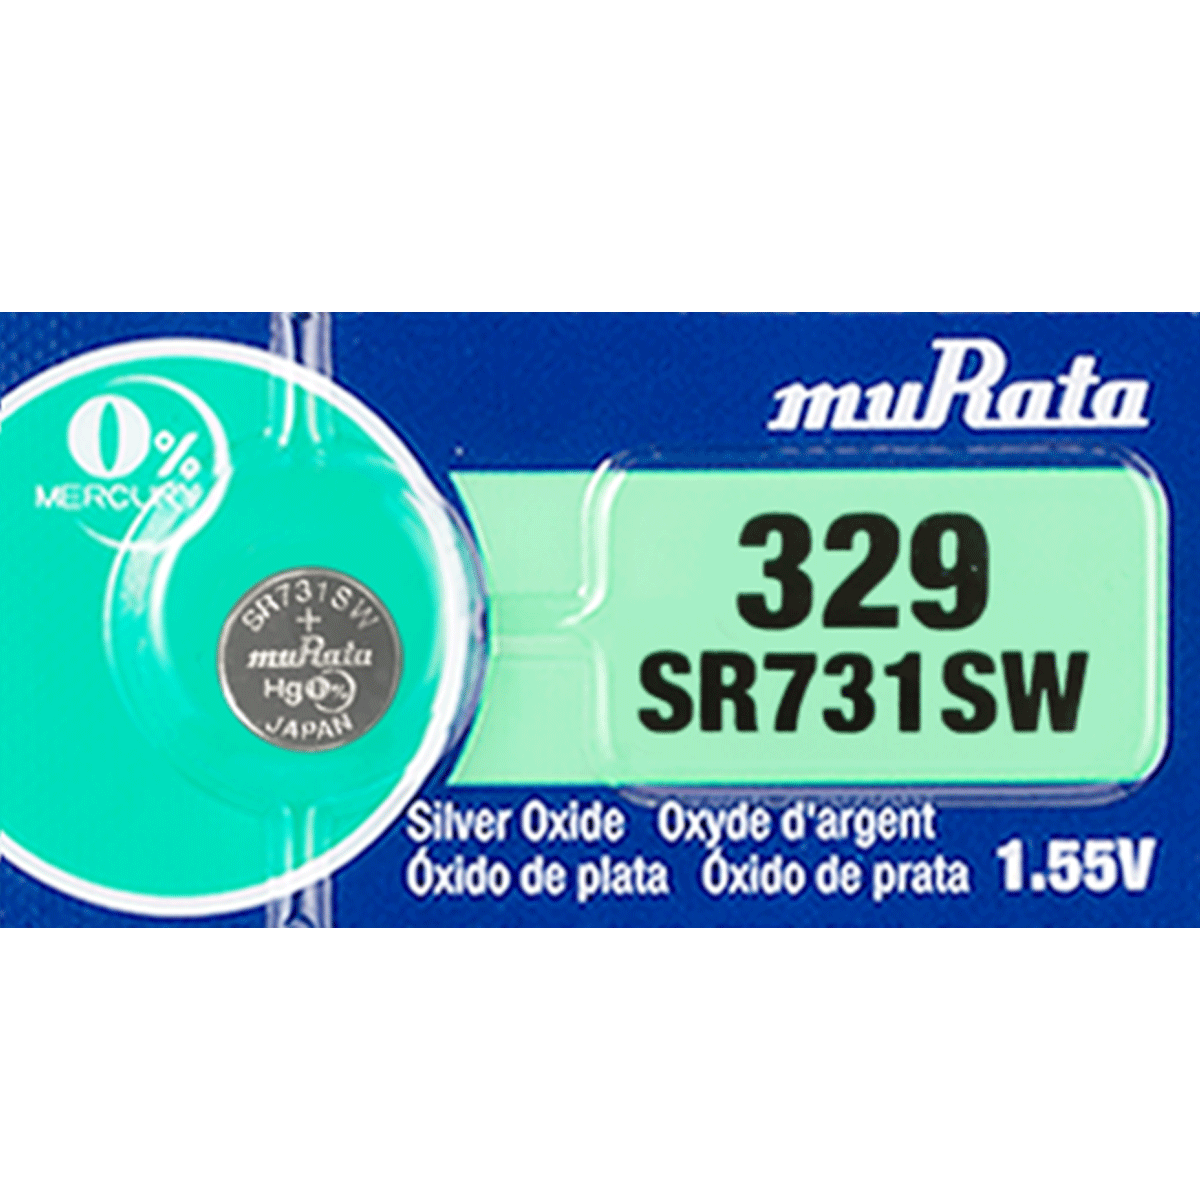 Murata 329 Battery (SR731SW) (formerly SONY) 1.55V Silver Oxide (1 Pack)